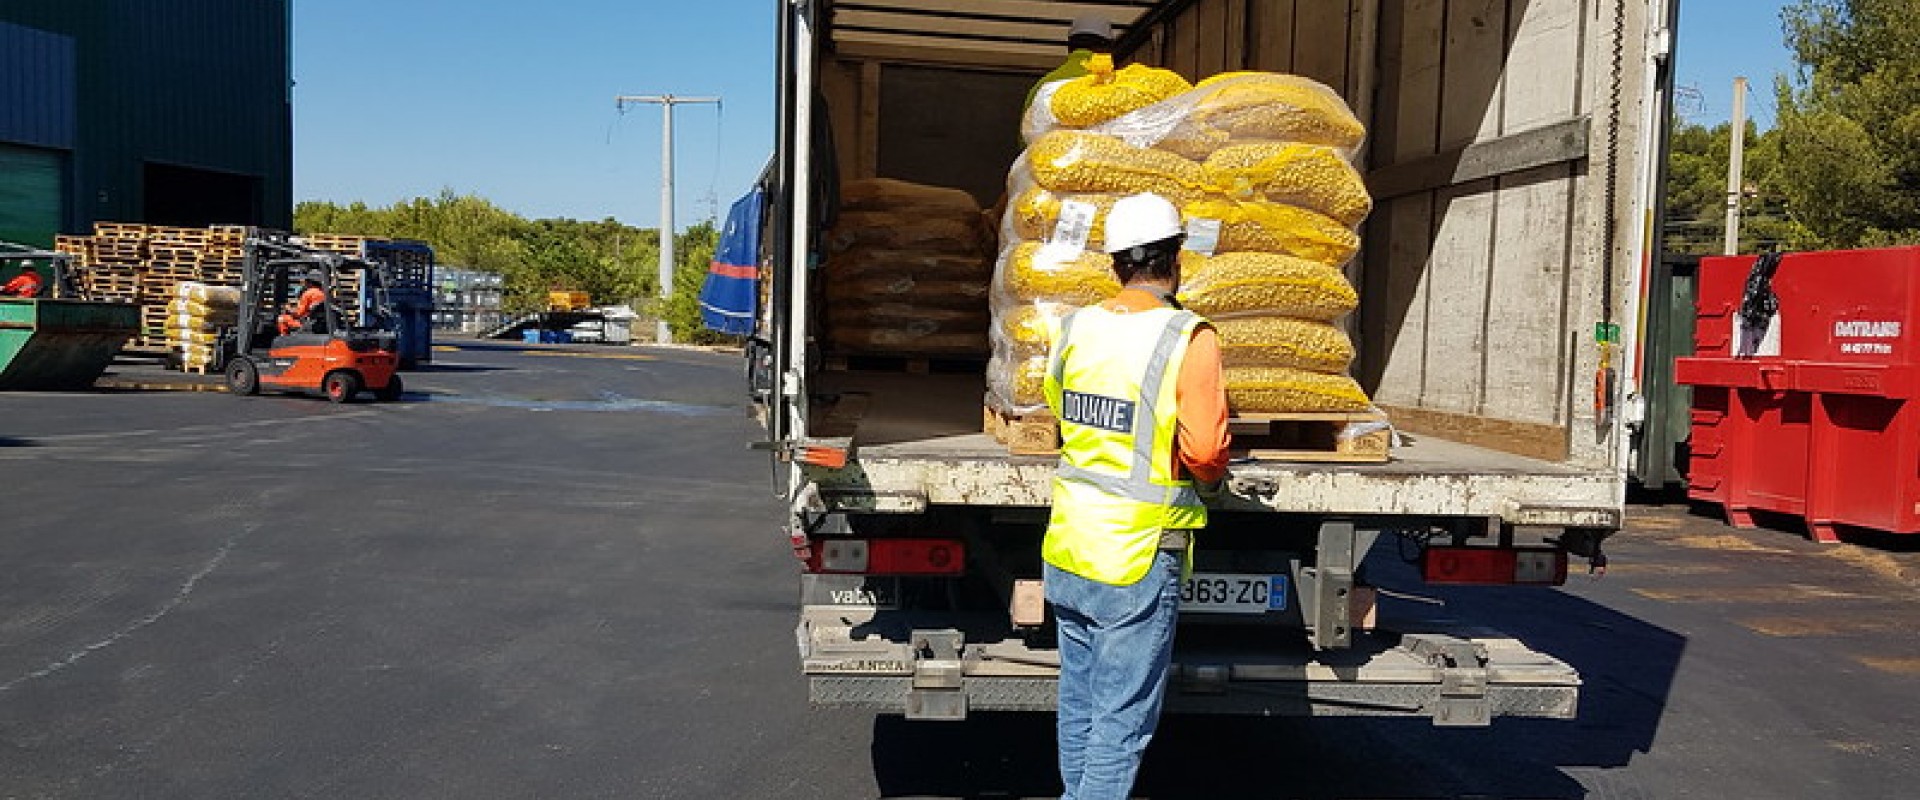 Les contrôles des fruits et légumes à l'importation transférés à la douane